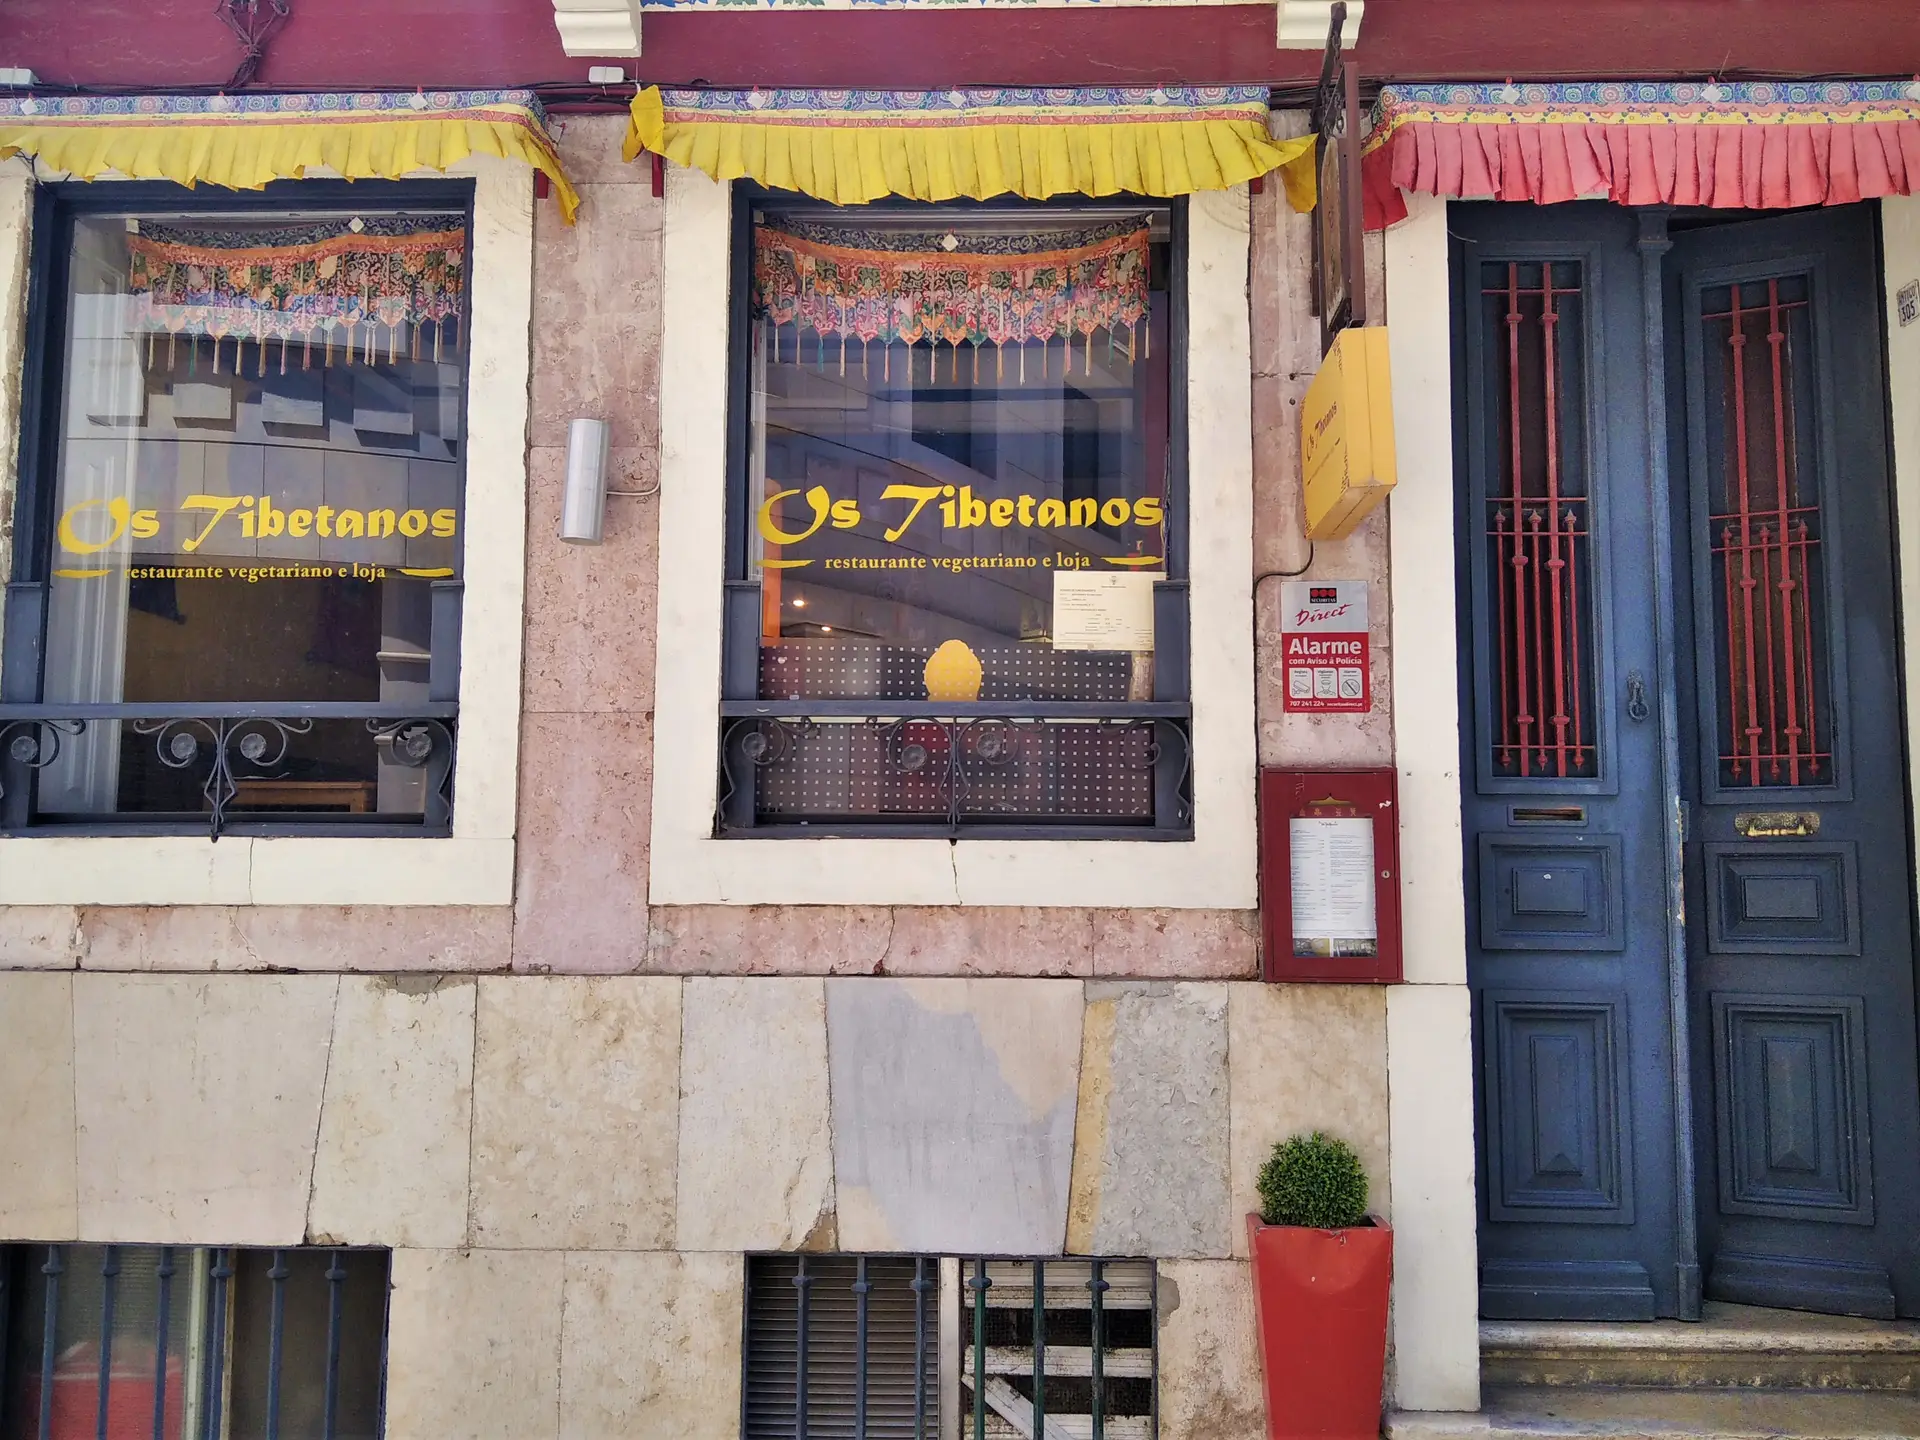 Fachada do restaurante Os Tibetanos, em Lisboa